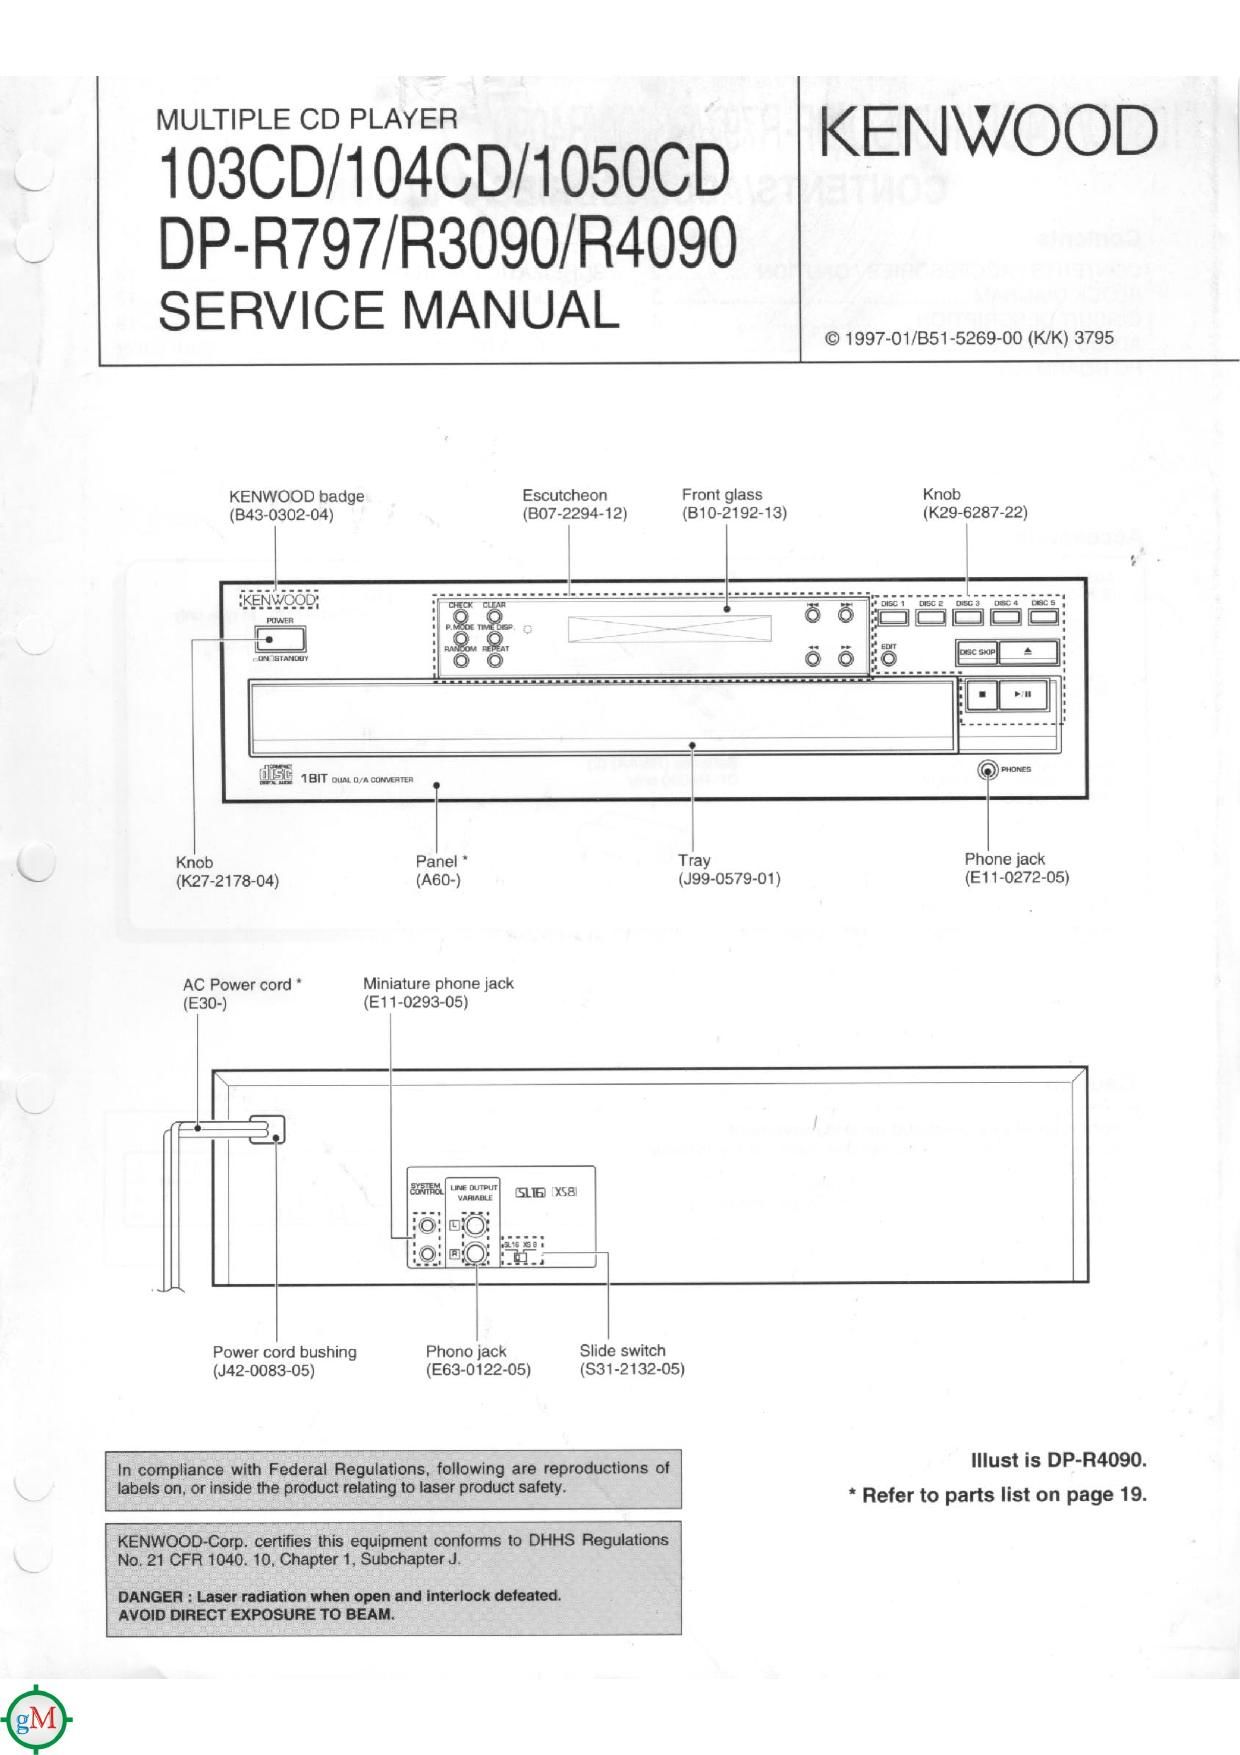 Kenwood DPR 4090 Service Manual